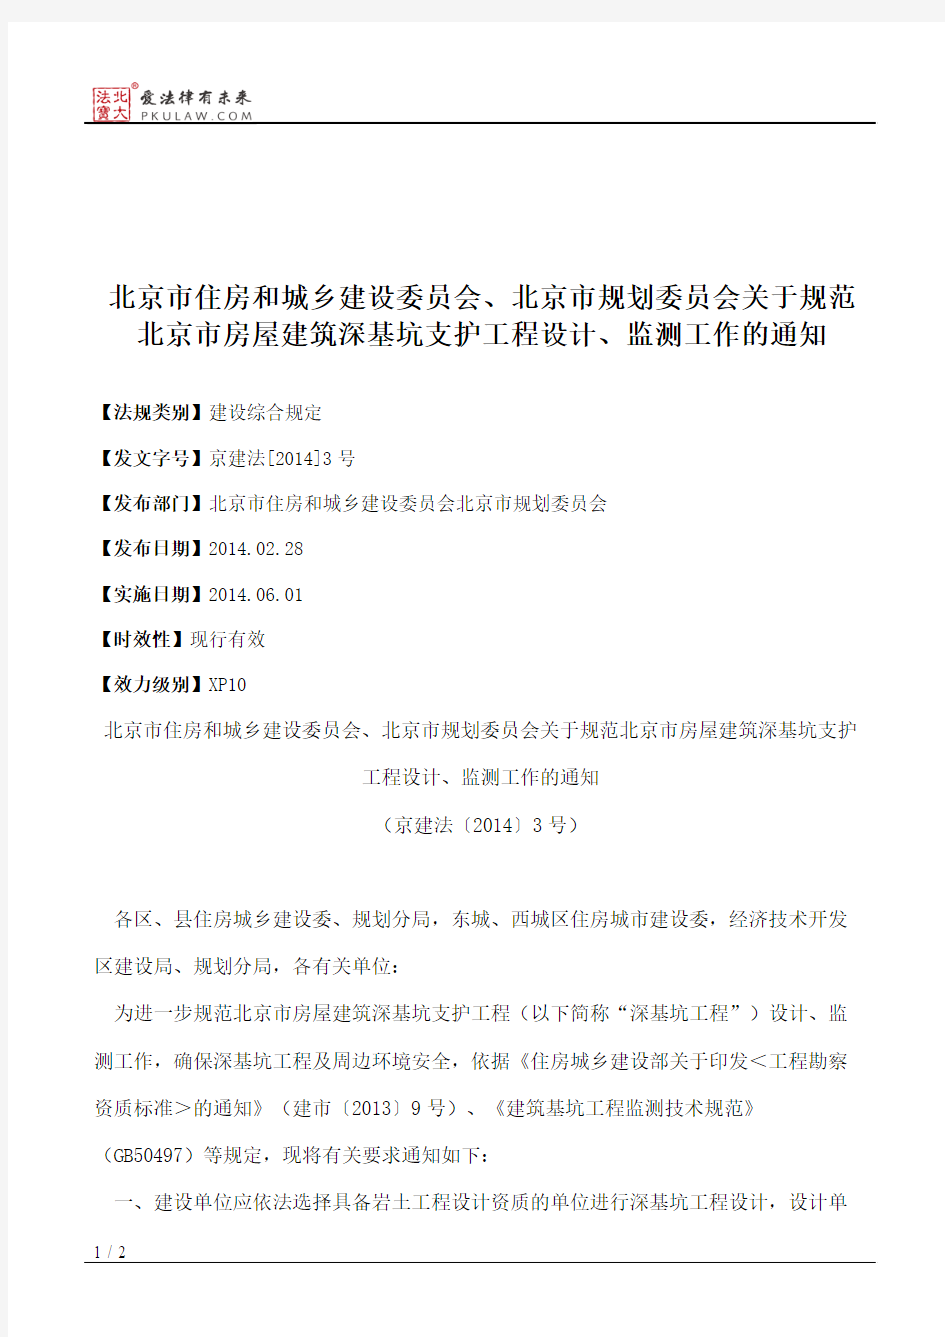 北京市住房和城乡建设委员会、北京市规划委员会关于规范北京市房